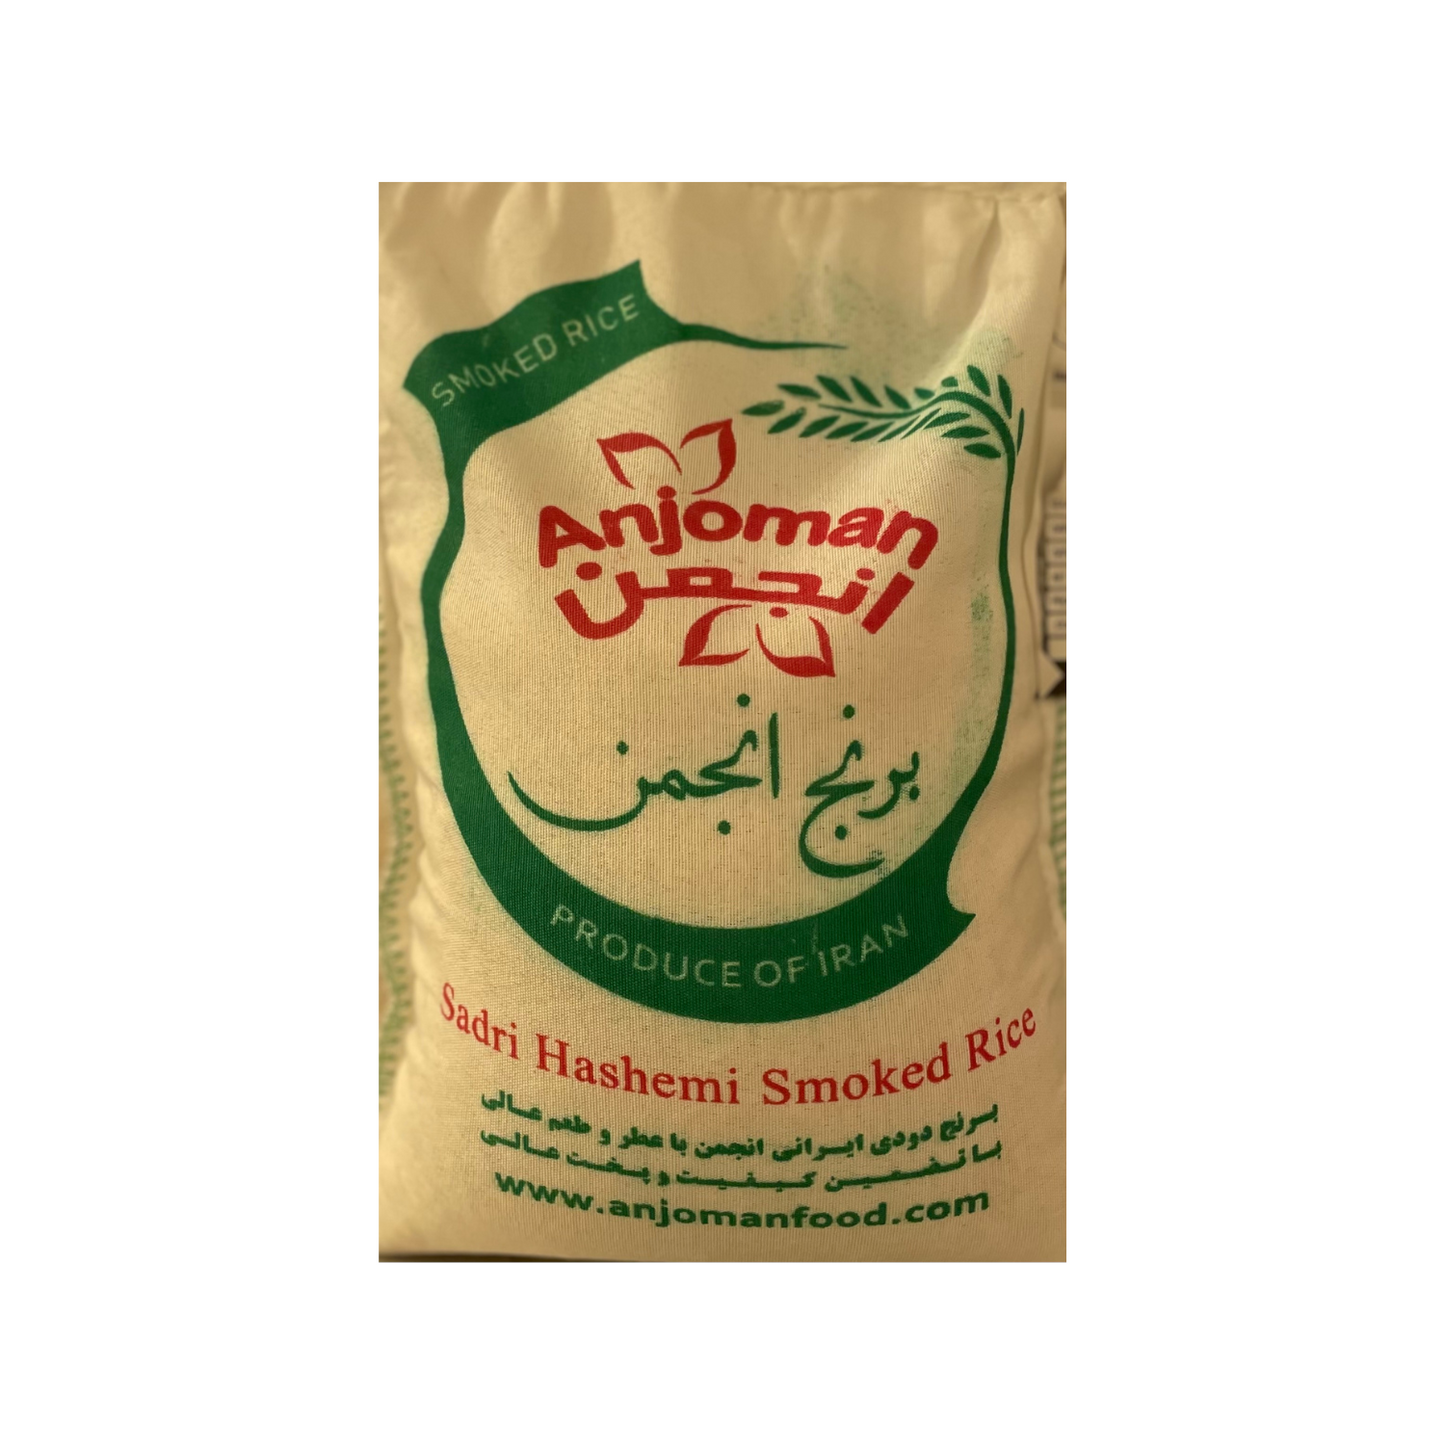 Hashemi Smoked Rice